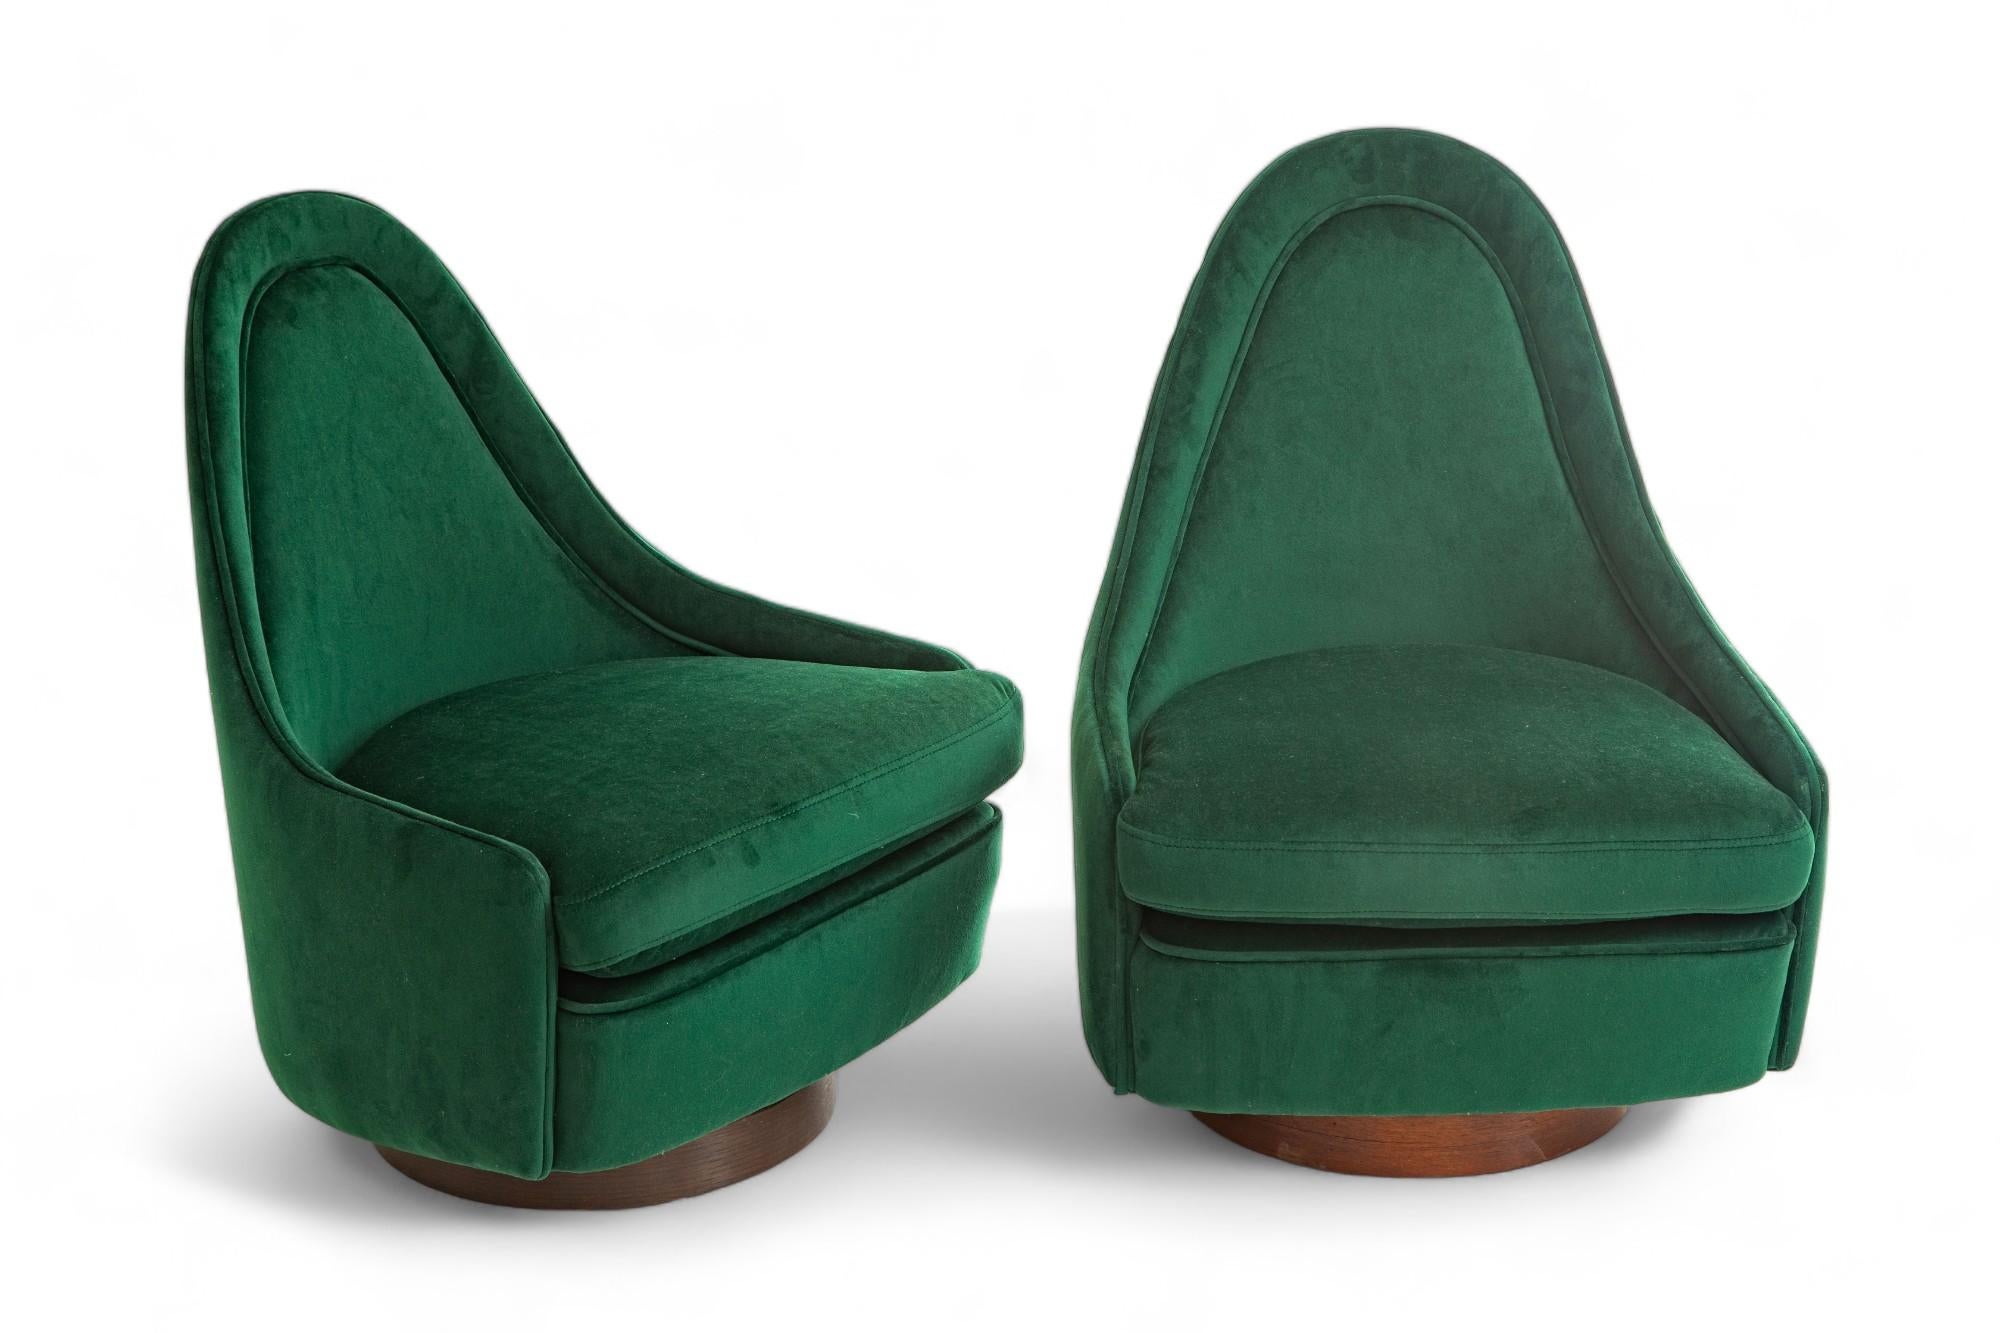 Paire de petits fauteuils de salon pivotants et inclinables de style moderne du milieu du siècle dernier 
par Milo Baughman pour Thayer
Dossier sculptural en forme de goutte d'eau sur une base en noyer
Nouvellement recouvert d'un velours vert